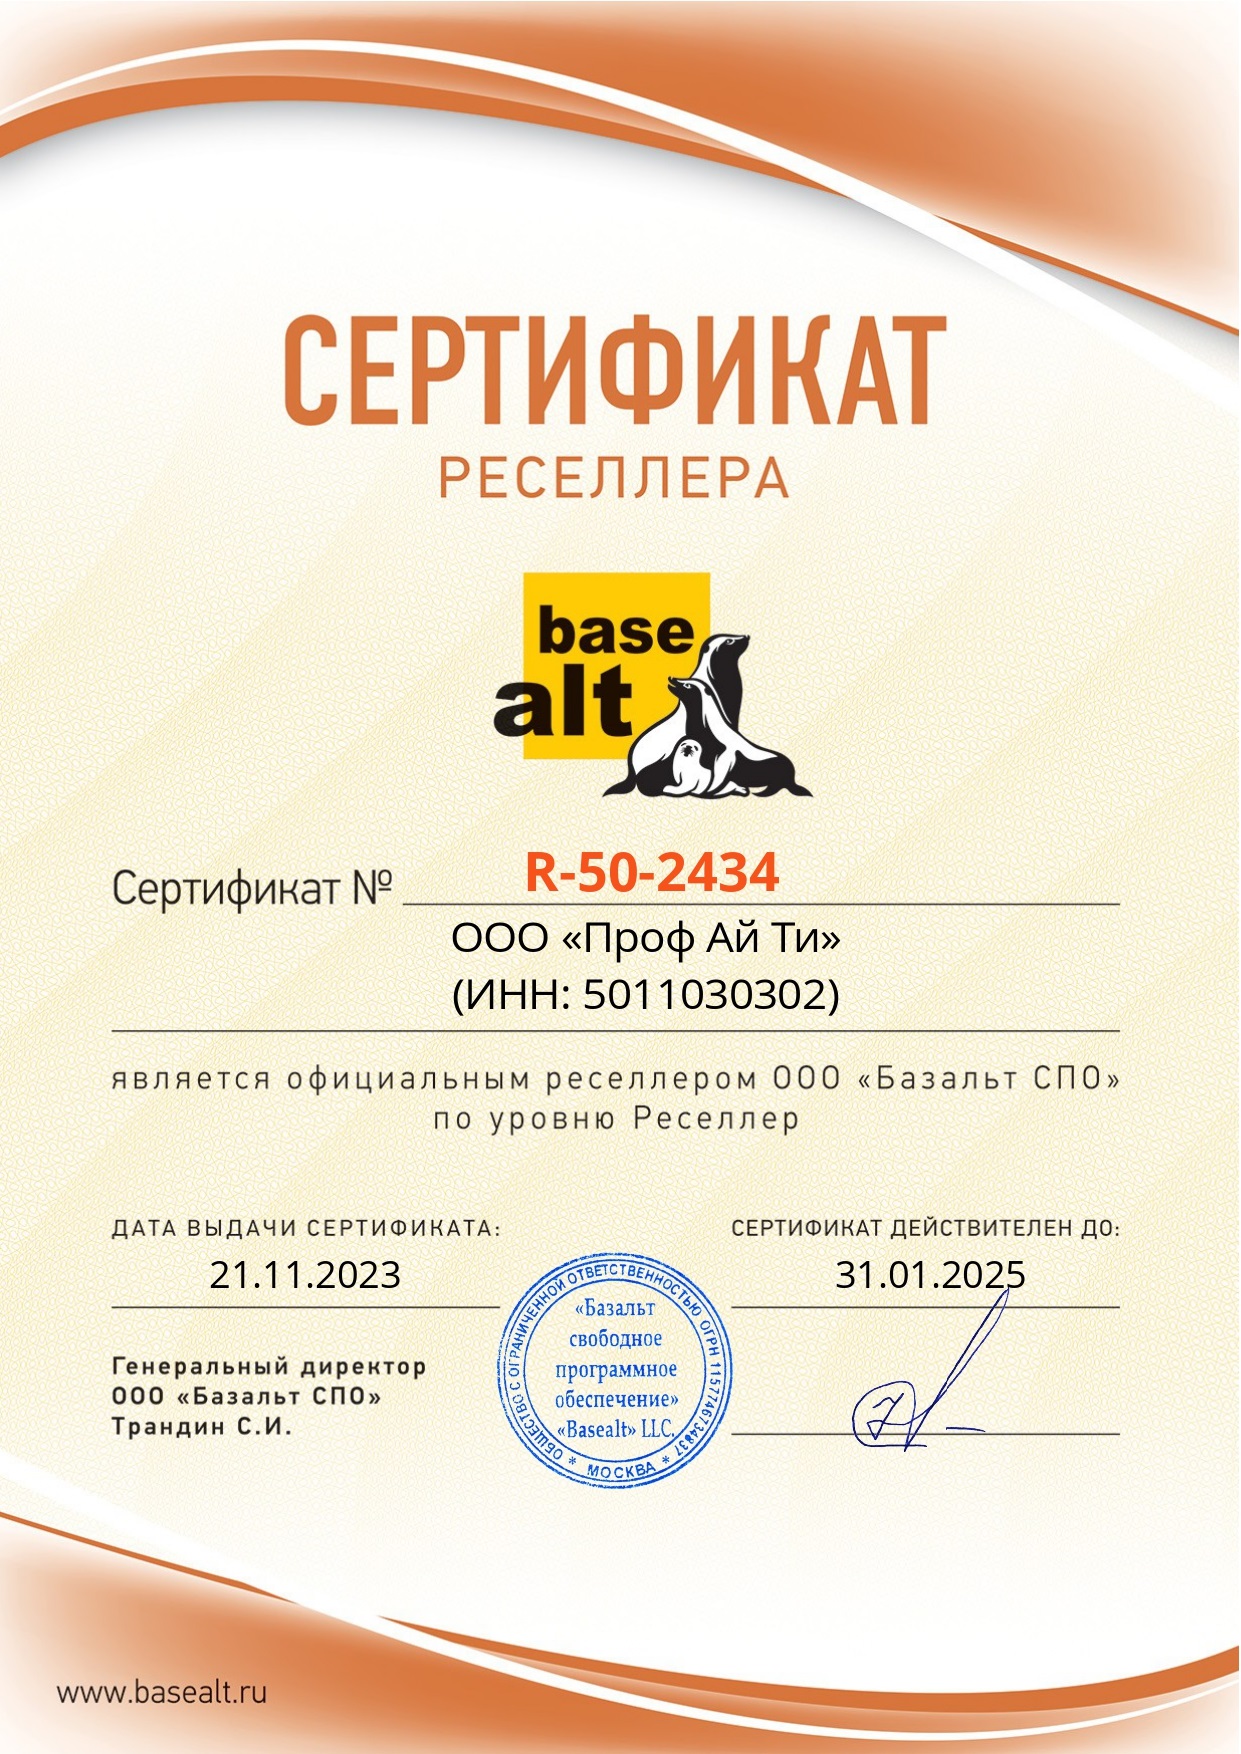 Сертификат Базальт СПО